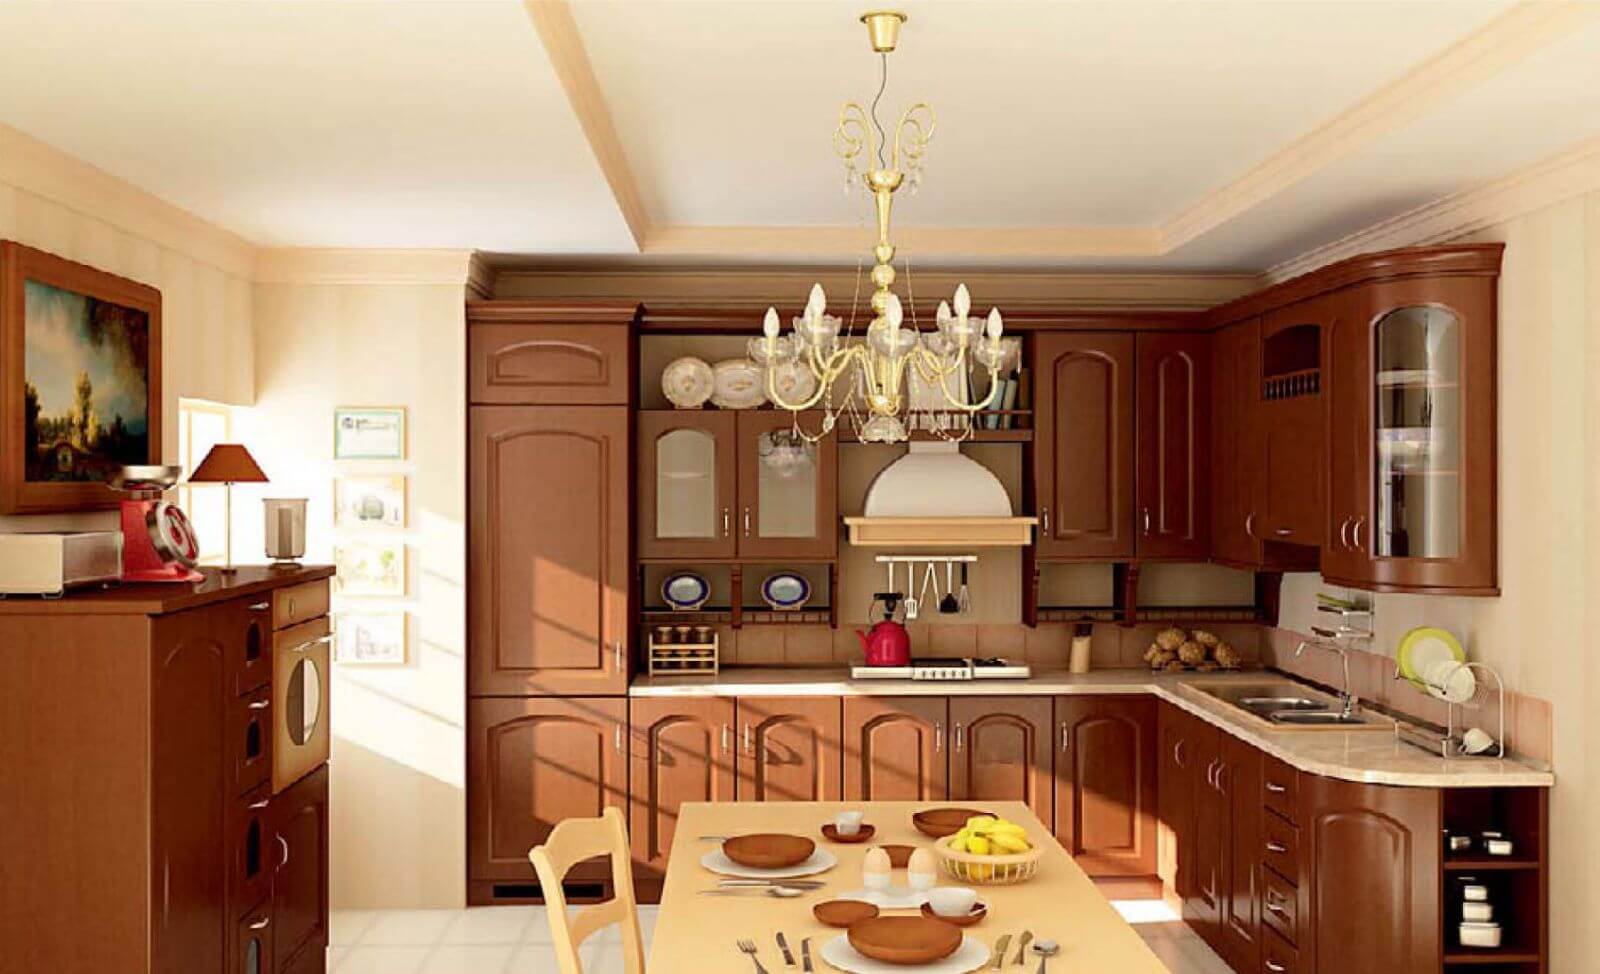 Thiết kế tủ bếp cổ điển sang trọng cho phòng bếp ăn của biệt thự Pháp